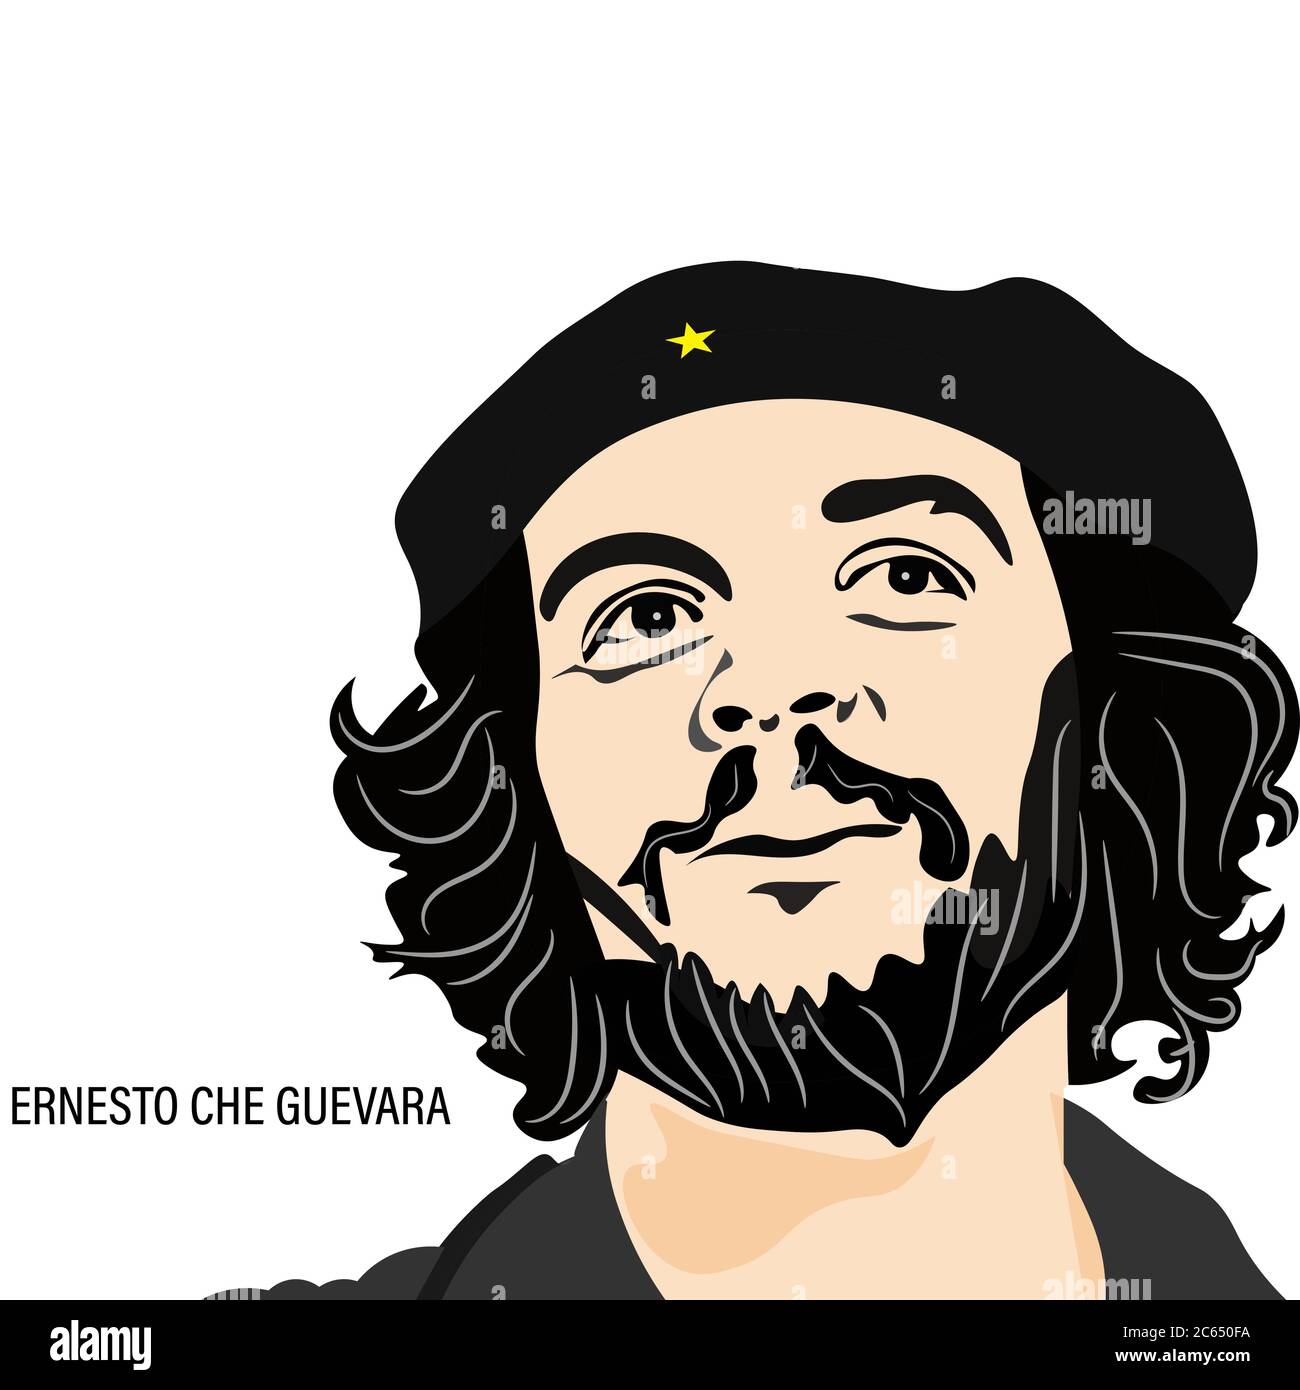 Ernesto Che Guevara ein argentinischer marxistischer Revolutionär in seiner traditionellen Haltung, EINE Hauptfigur der kubanischen Revolution. Stock Vektor